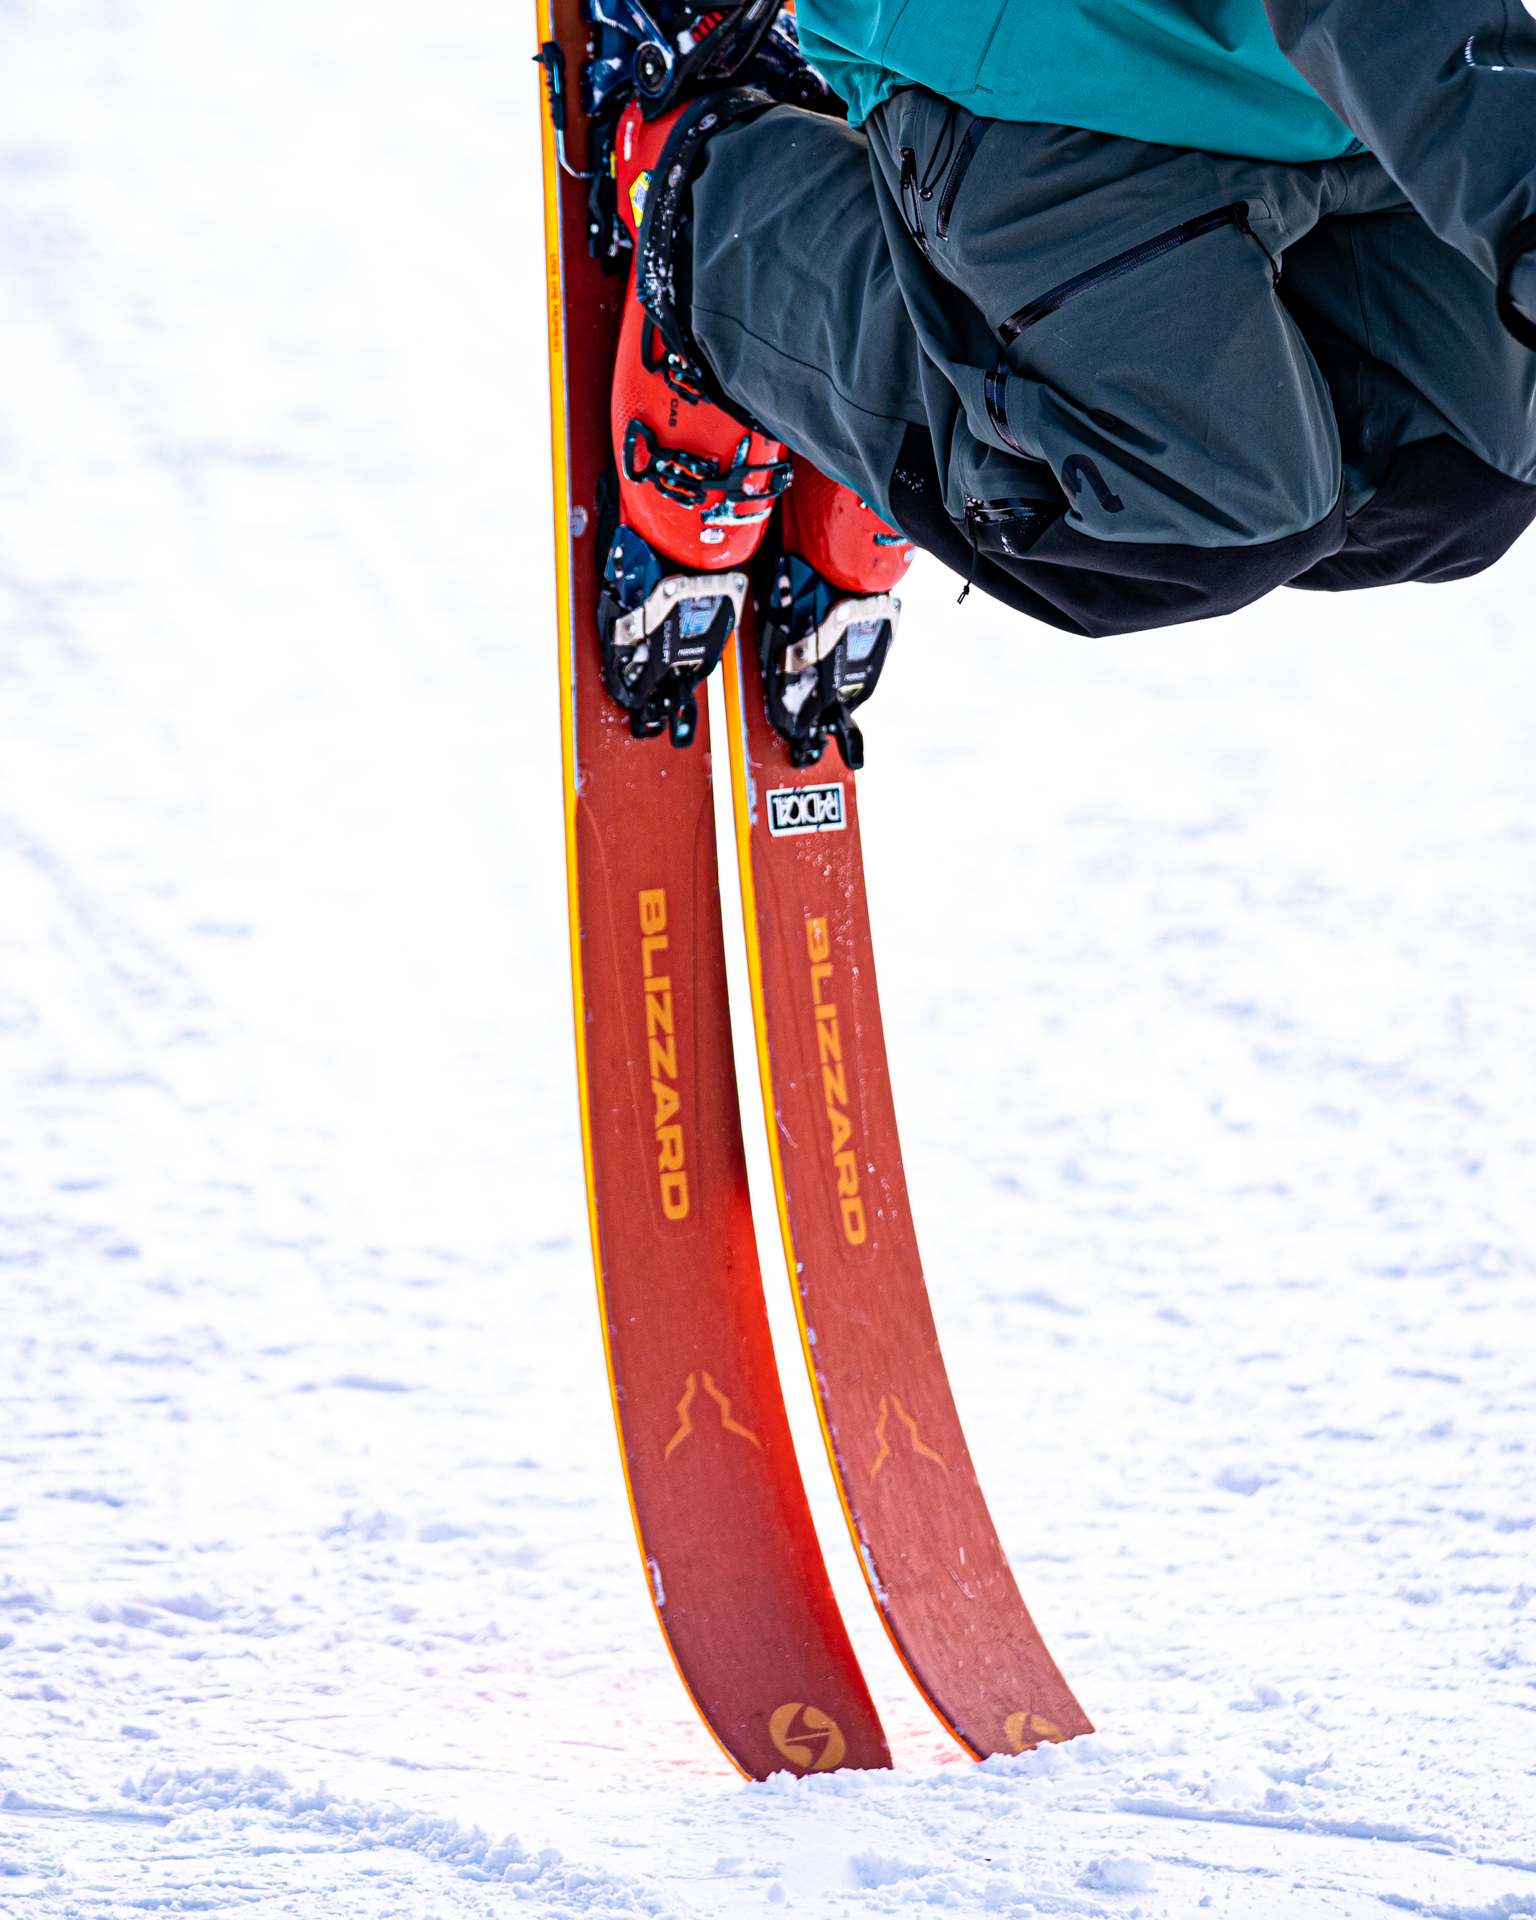 Photo détails sur les ski pendant que le skieur réalise une figure